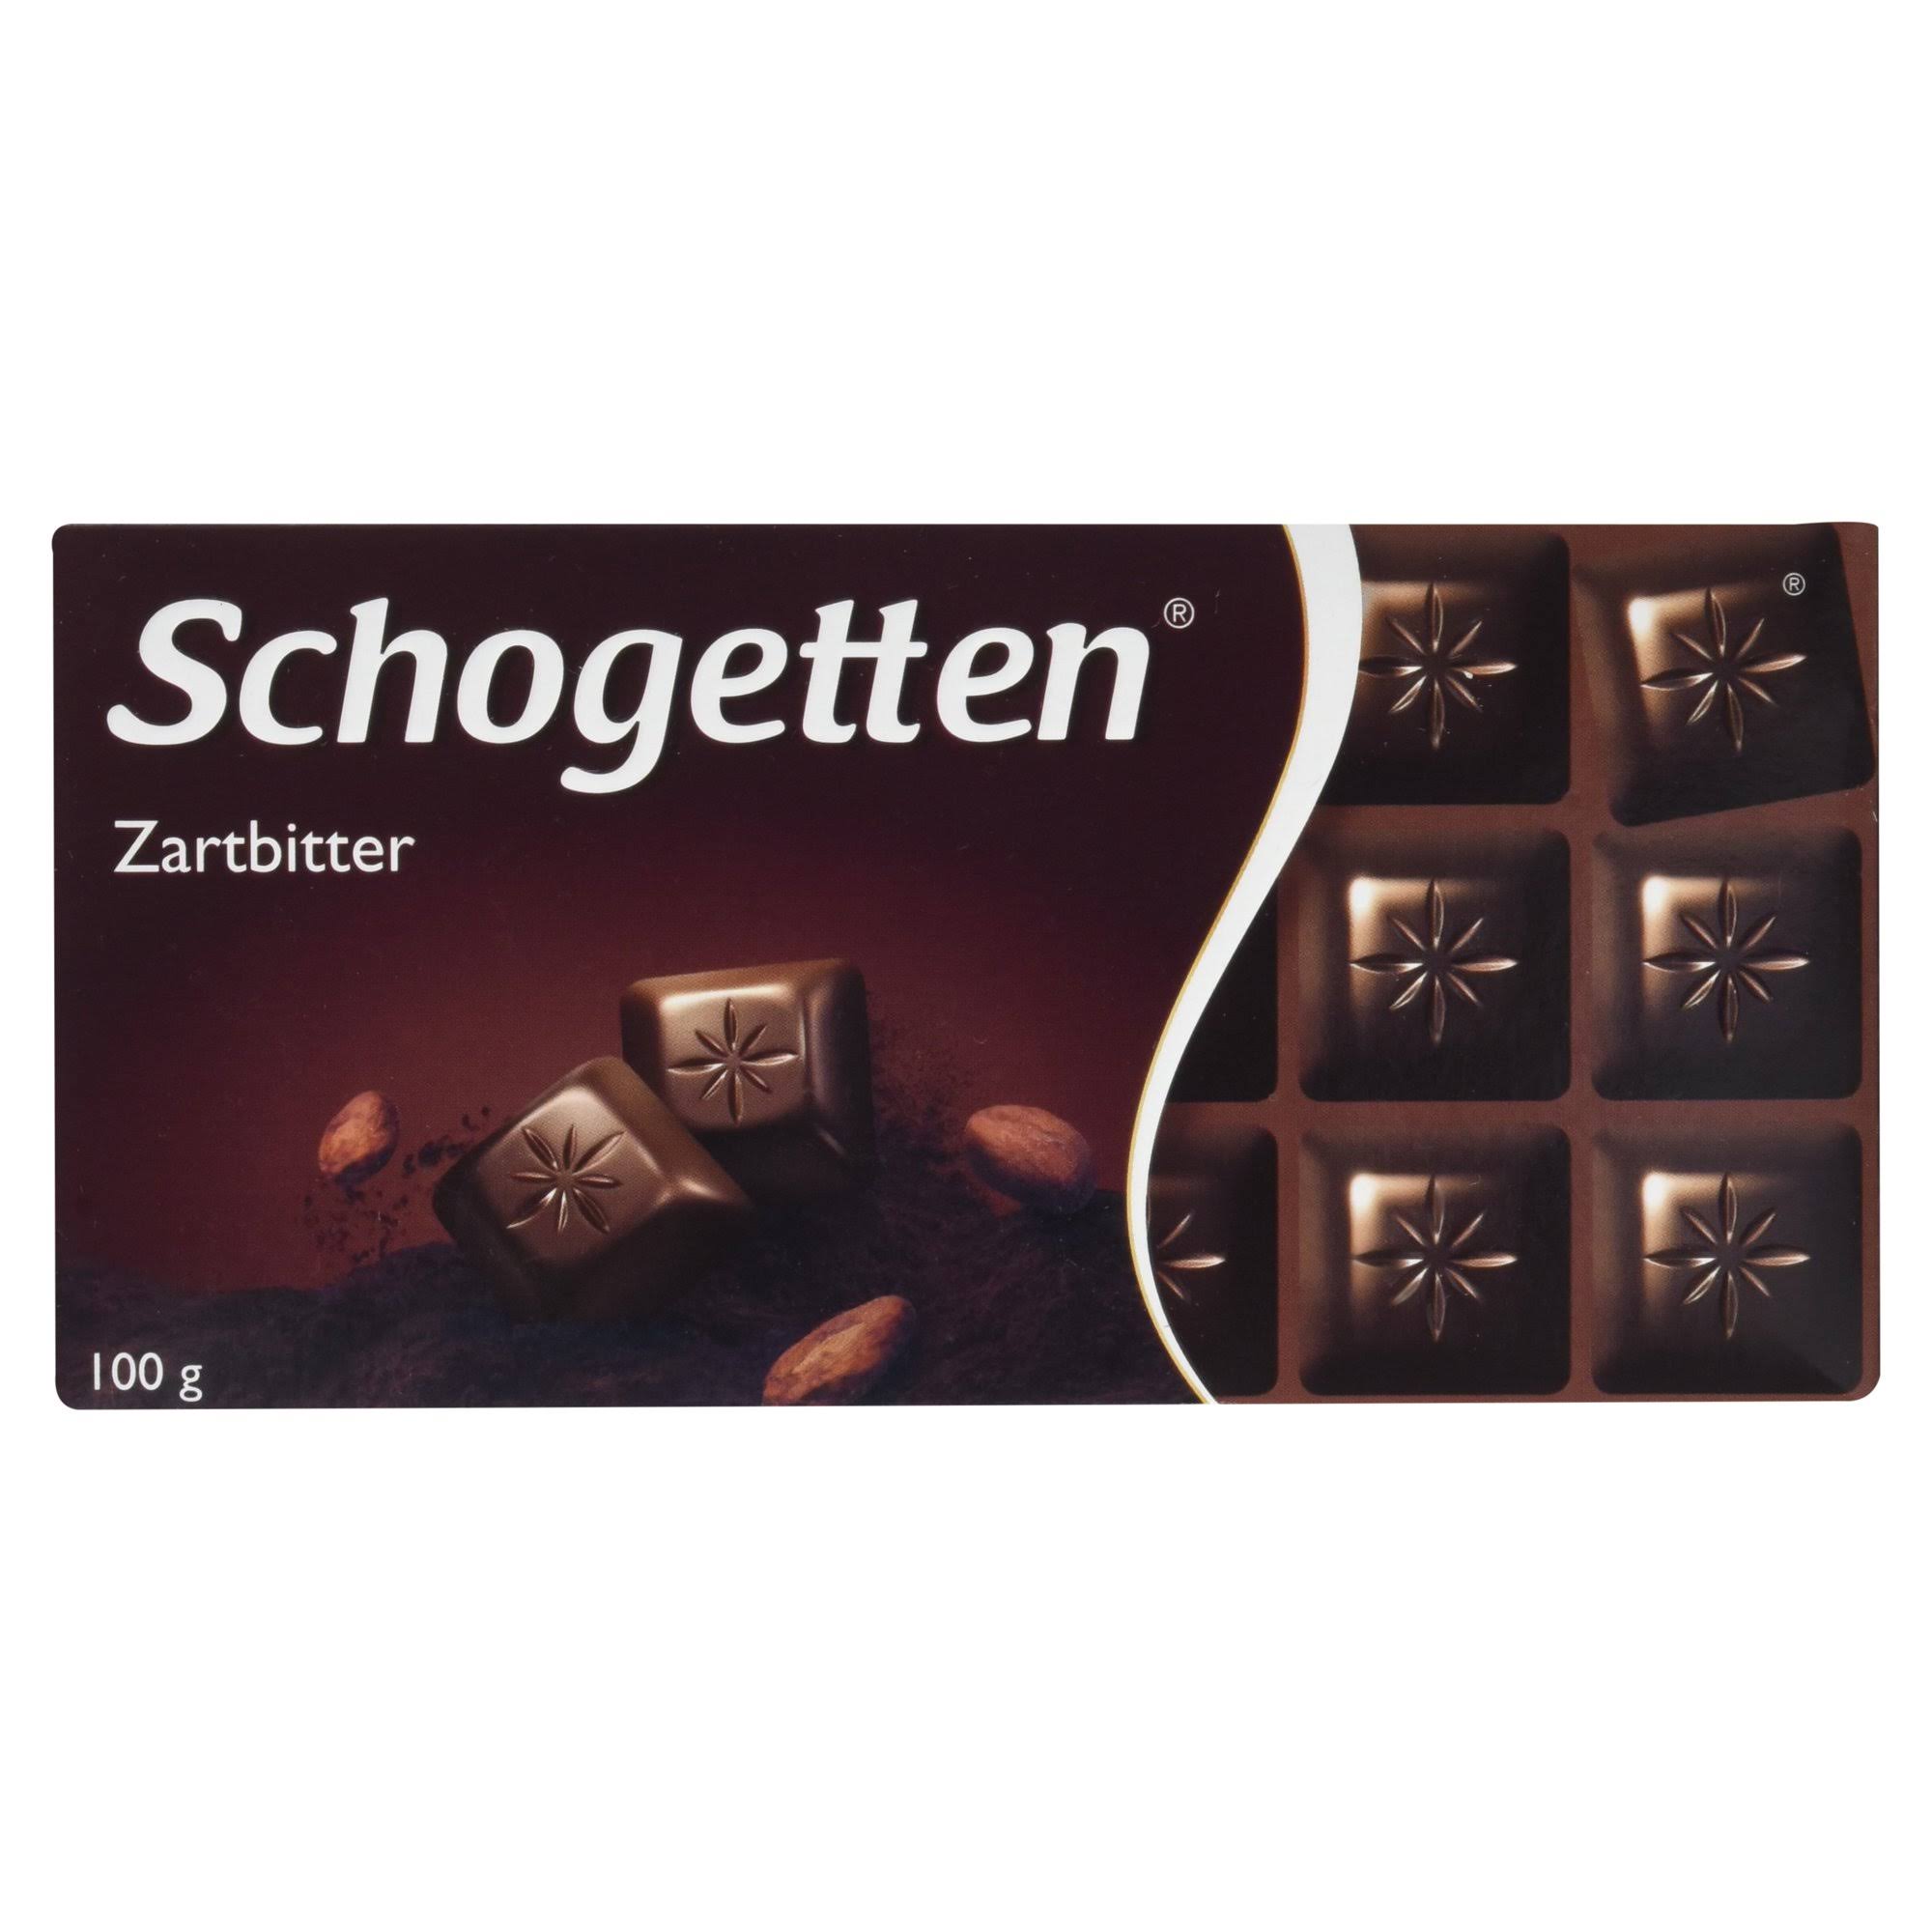 Schogetten Zartbitter (3 Bars Each 100g) - Fresh from Germany